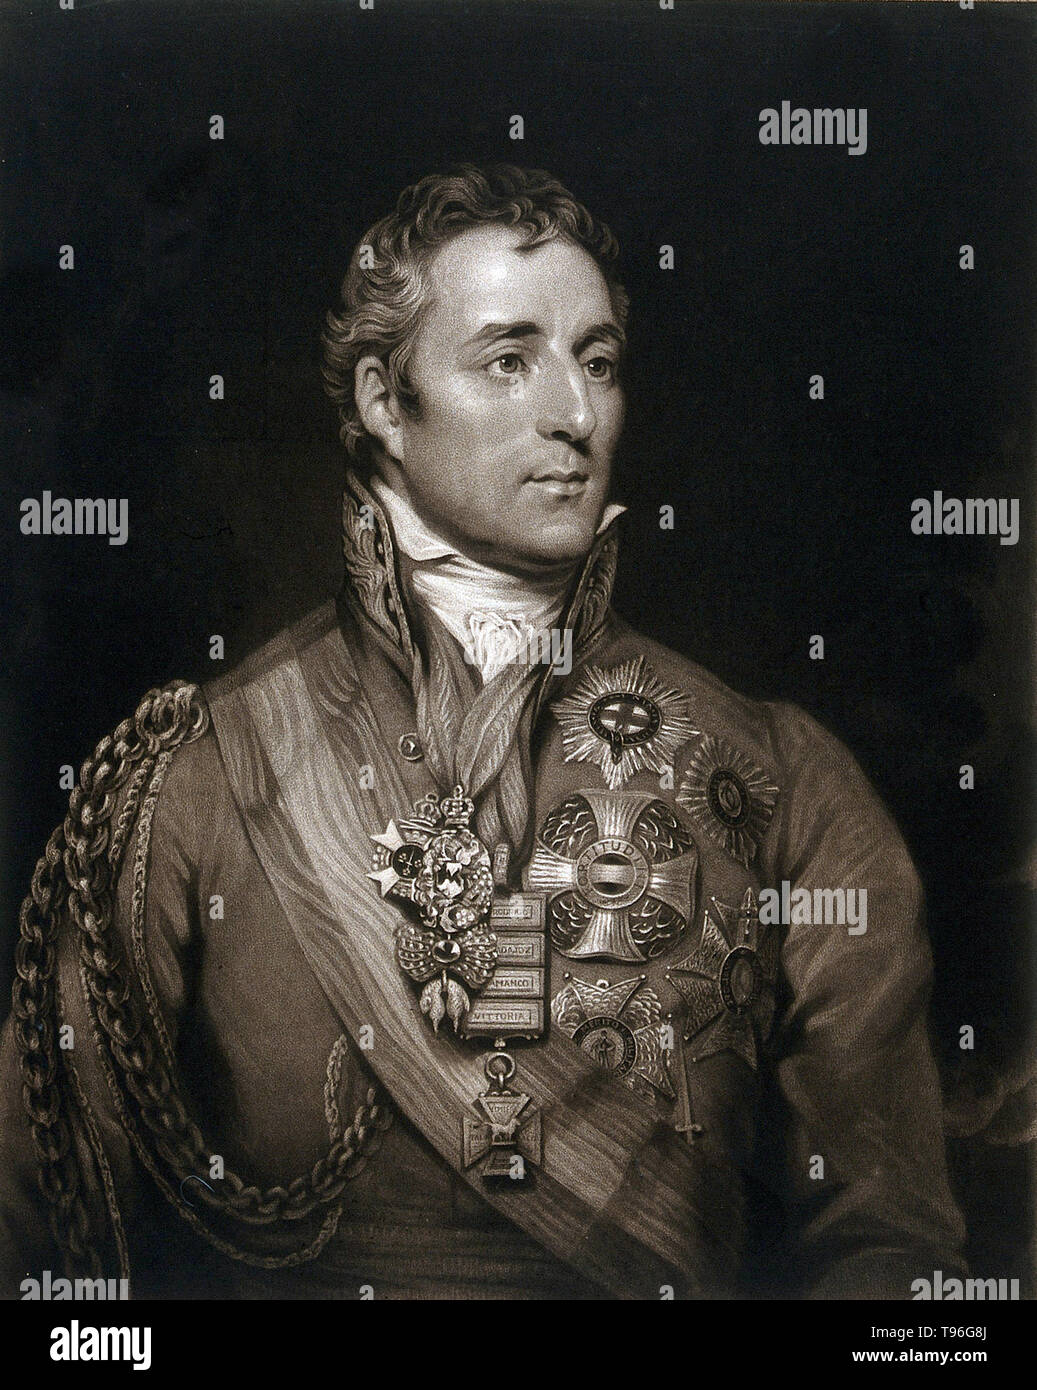 Arthur Wellesley, 1. Herzog von Wellington (1. Mai 1769 - 14. September 1852), war ein anglo-irischen Soldat und Staatsmann. Wellesley stieg zum Vorsprung als allgemeine während der Halbinsel Kampagne der Napoleonischen Kriege, und wurde in den Rang eines Feldmarschalls, nachdem die alliierten Truppen zum Sieg gegen das Französische Imperium in der Schlacht von Vitoria im Jahr 1813 gefördert. Nach Napoleons Verbannung 1814, diente er als Botschafter in Frankreich und war ein Herzogtum gewährt. Stockfoto